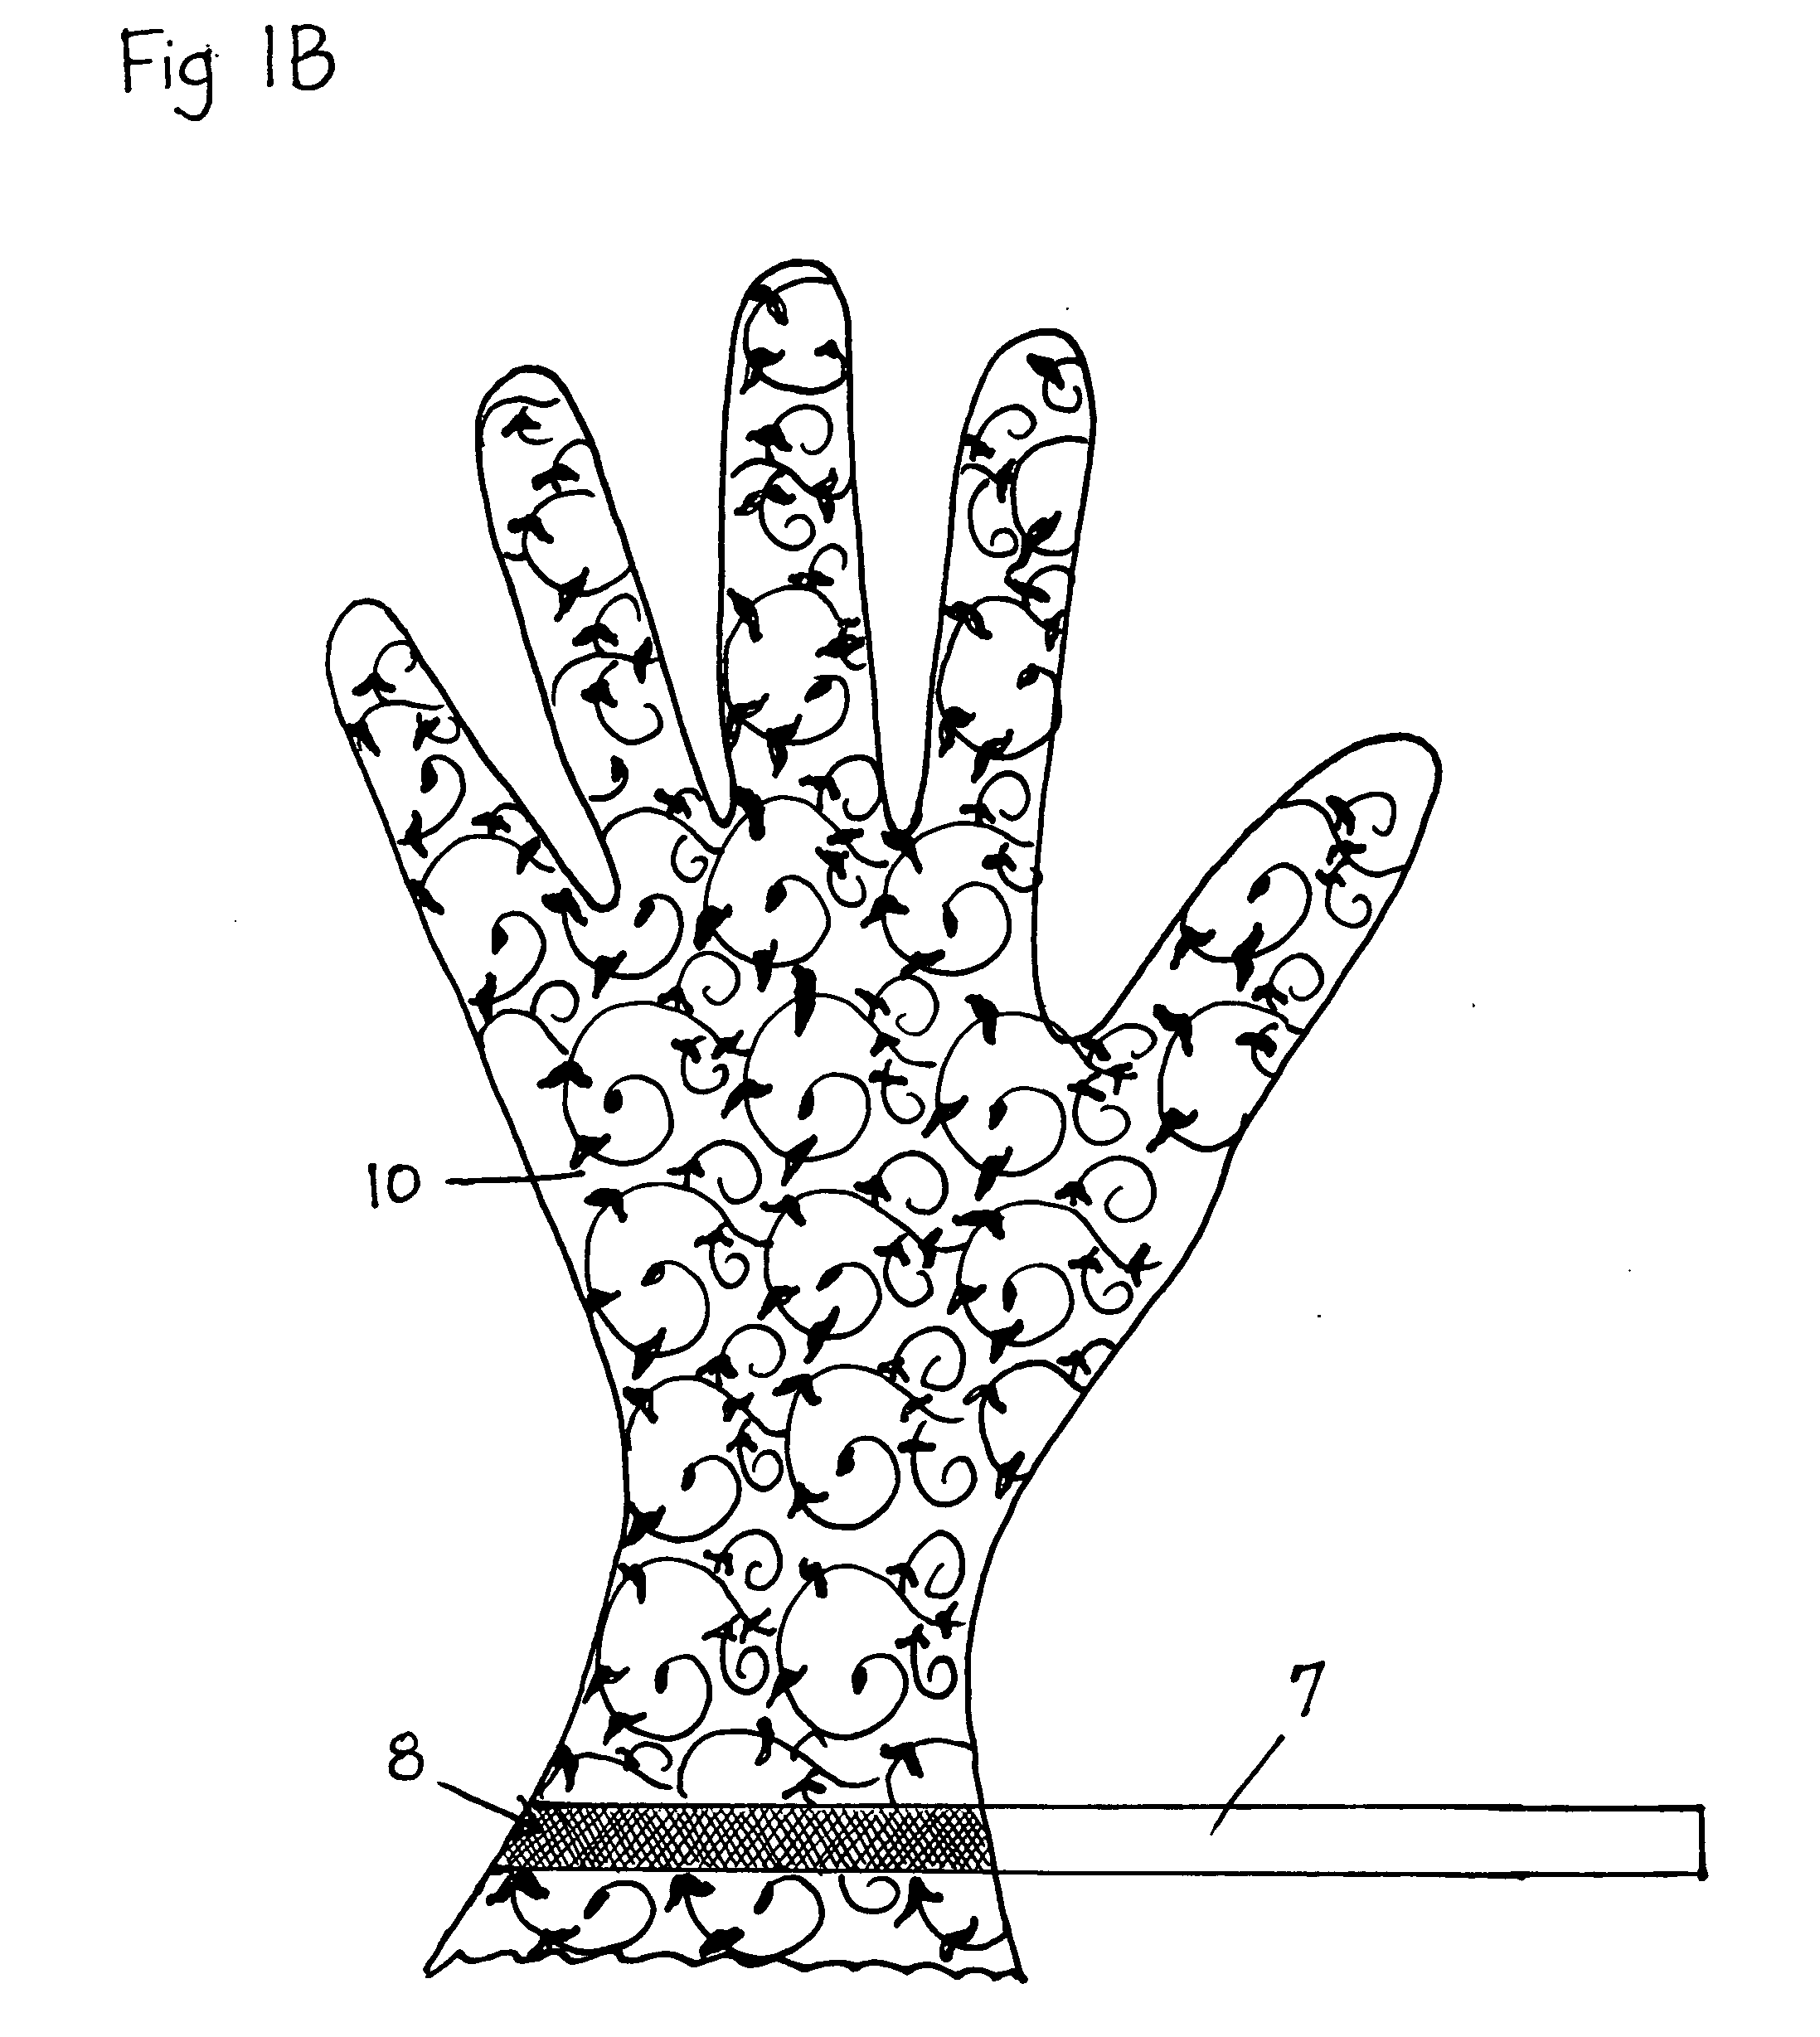 Fingernail protection work gloves